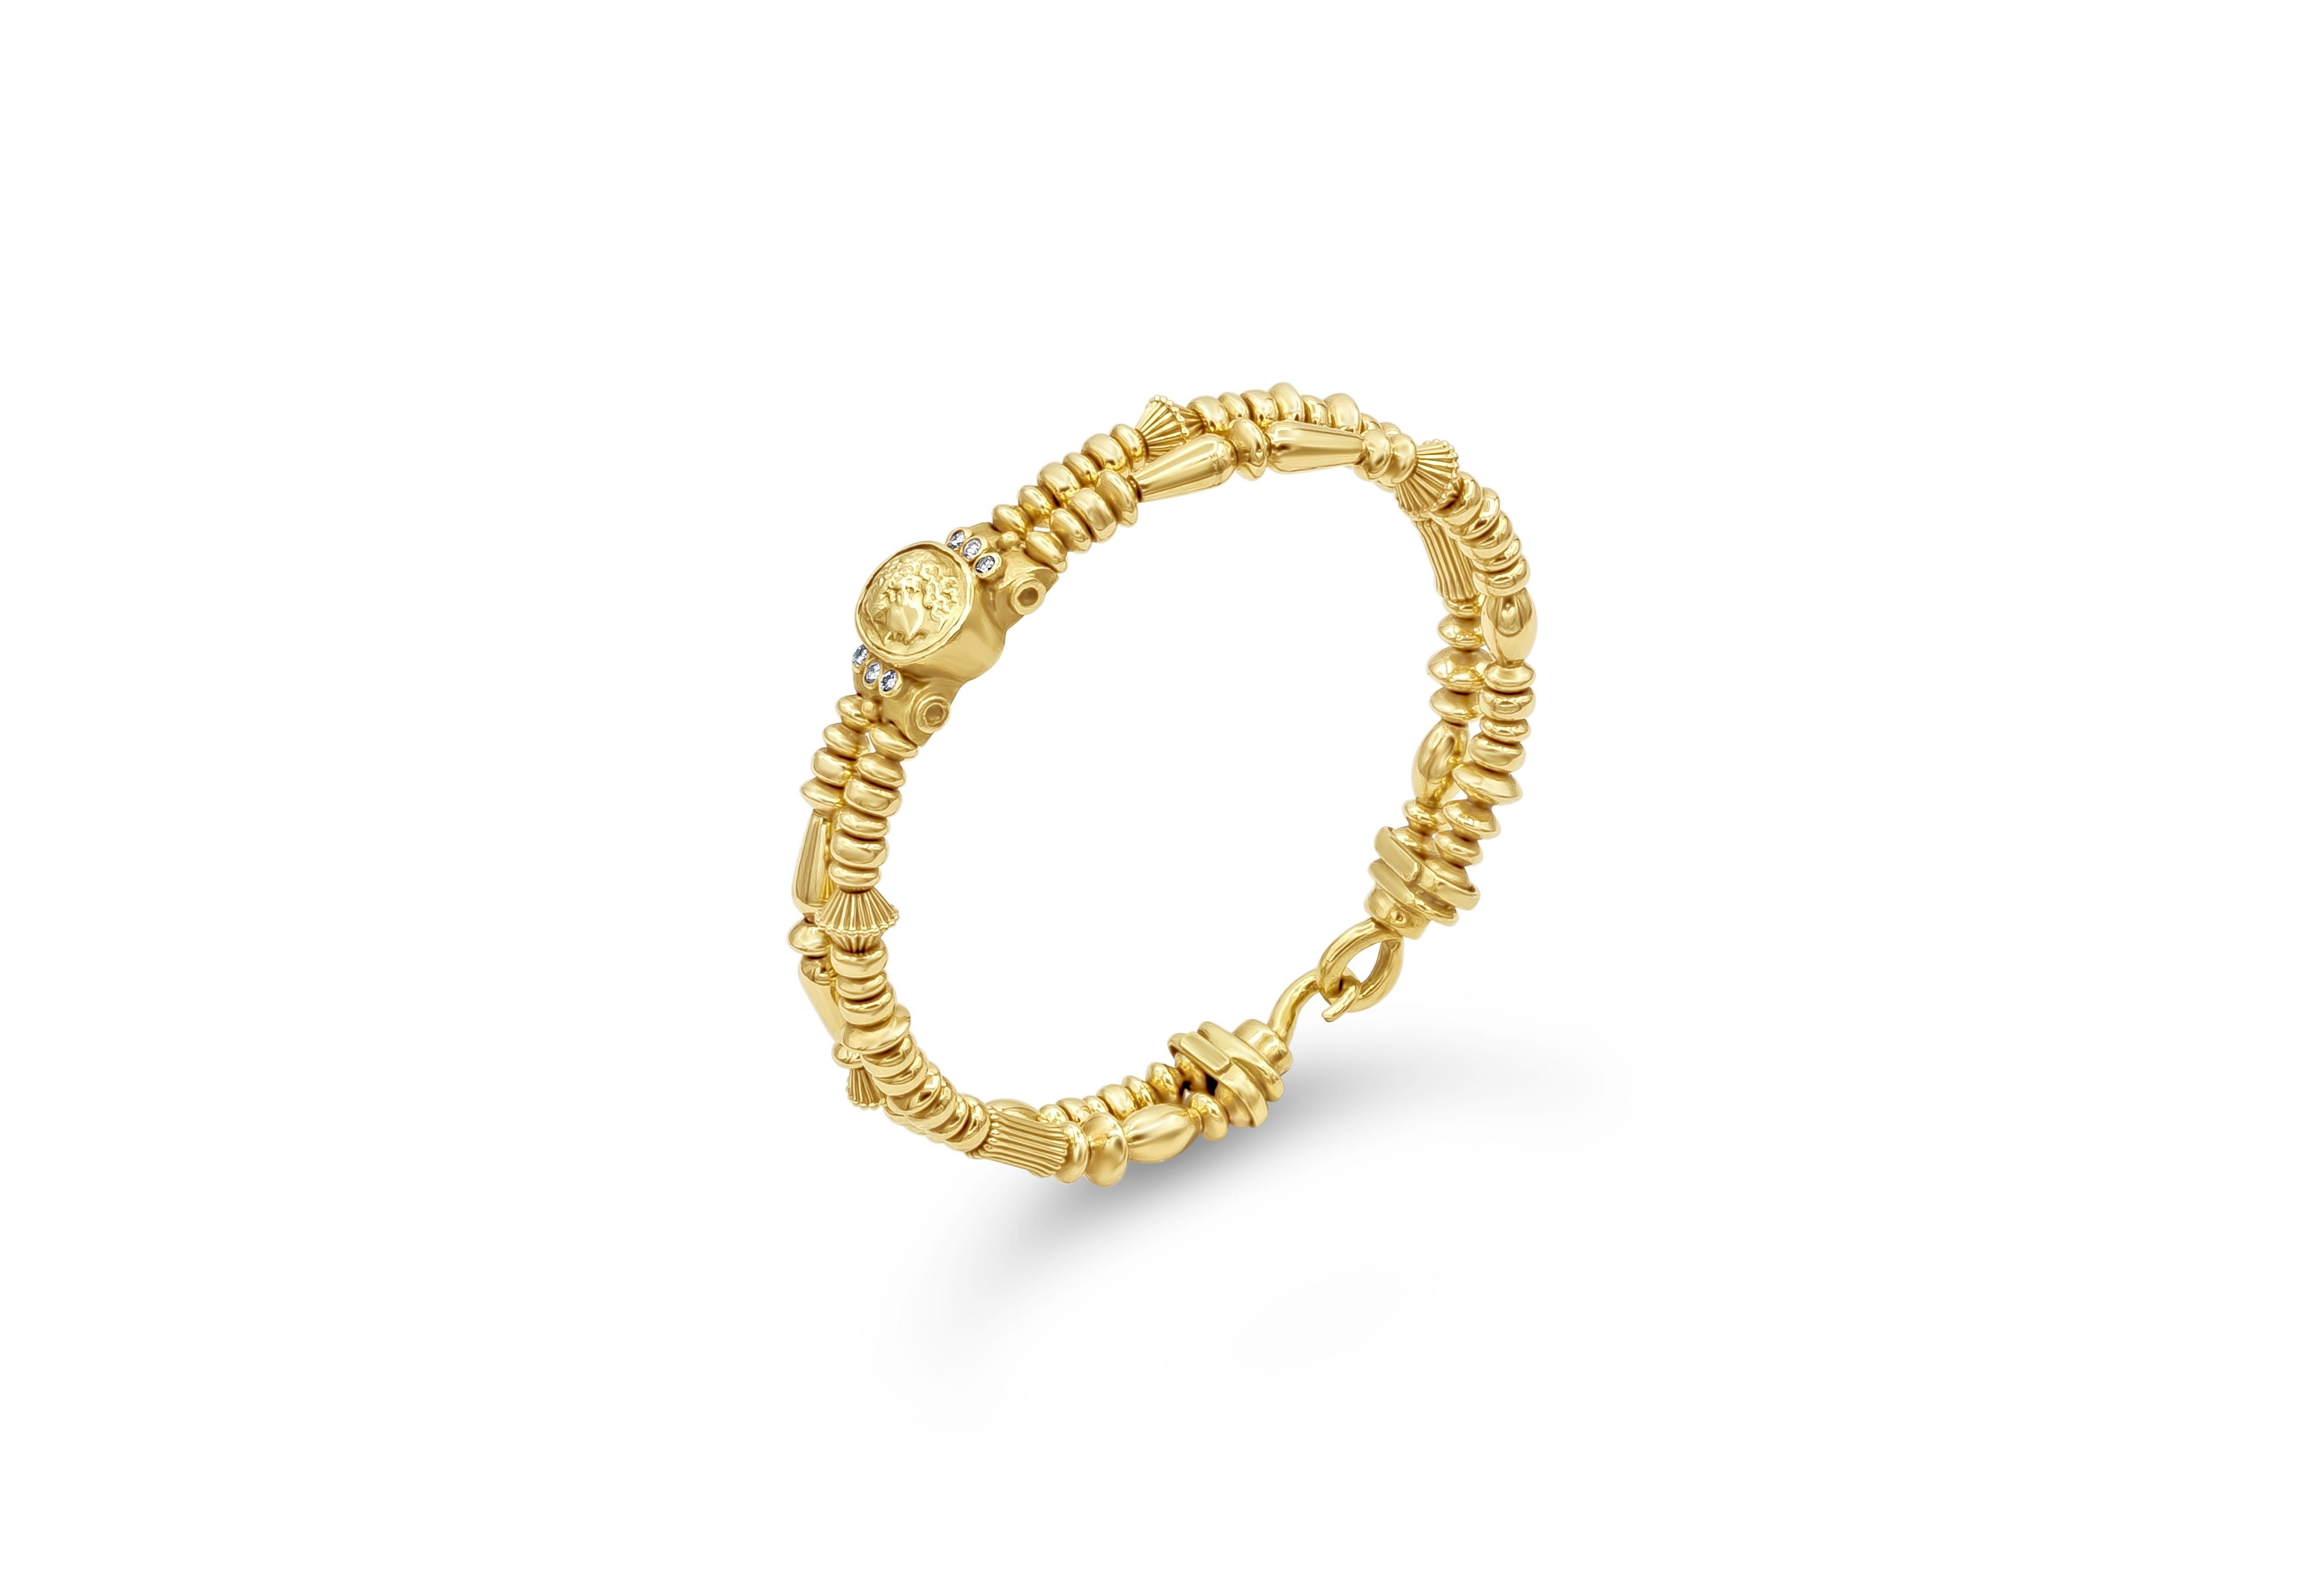 Un bracelet unique et magnifique représentant le profil latéral d'un homme romain en or jaune 18 carats, rehaussé de diamants de part et d'autre. Les diamants pèsent 0,12 carat au total. Design/One en or jaune 18 carats. Signé par SeidenGang.